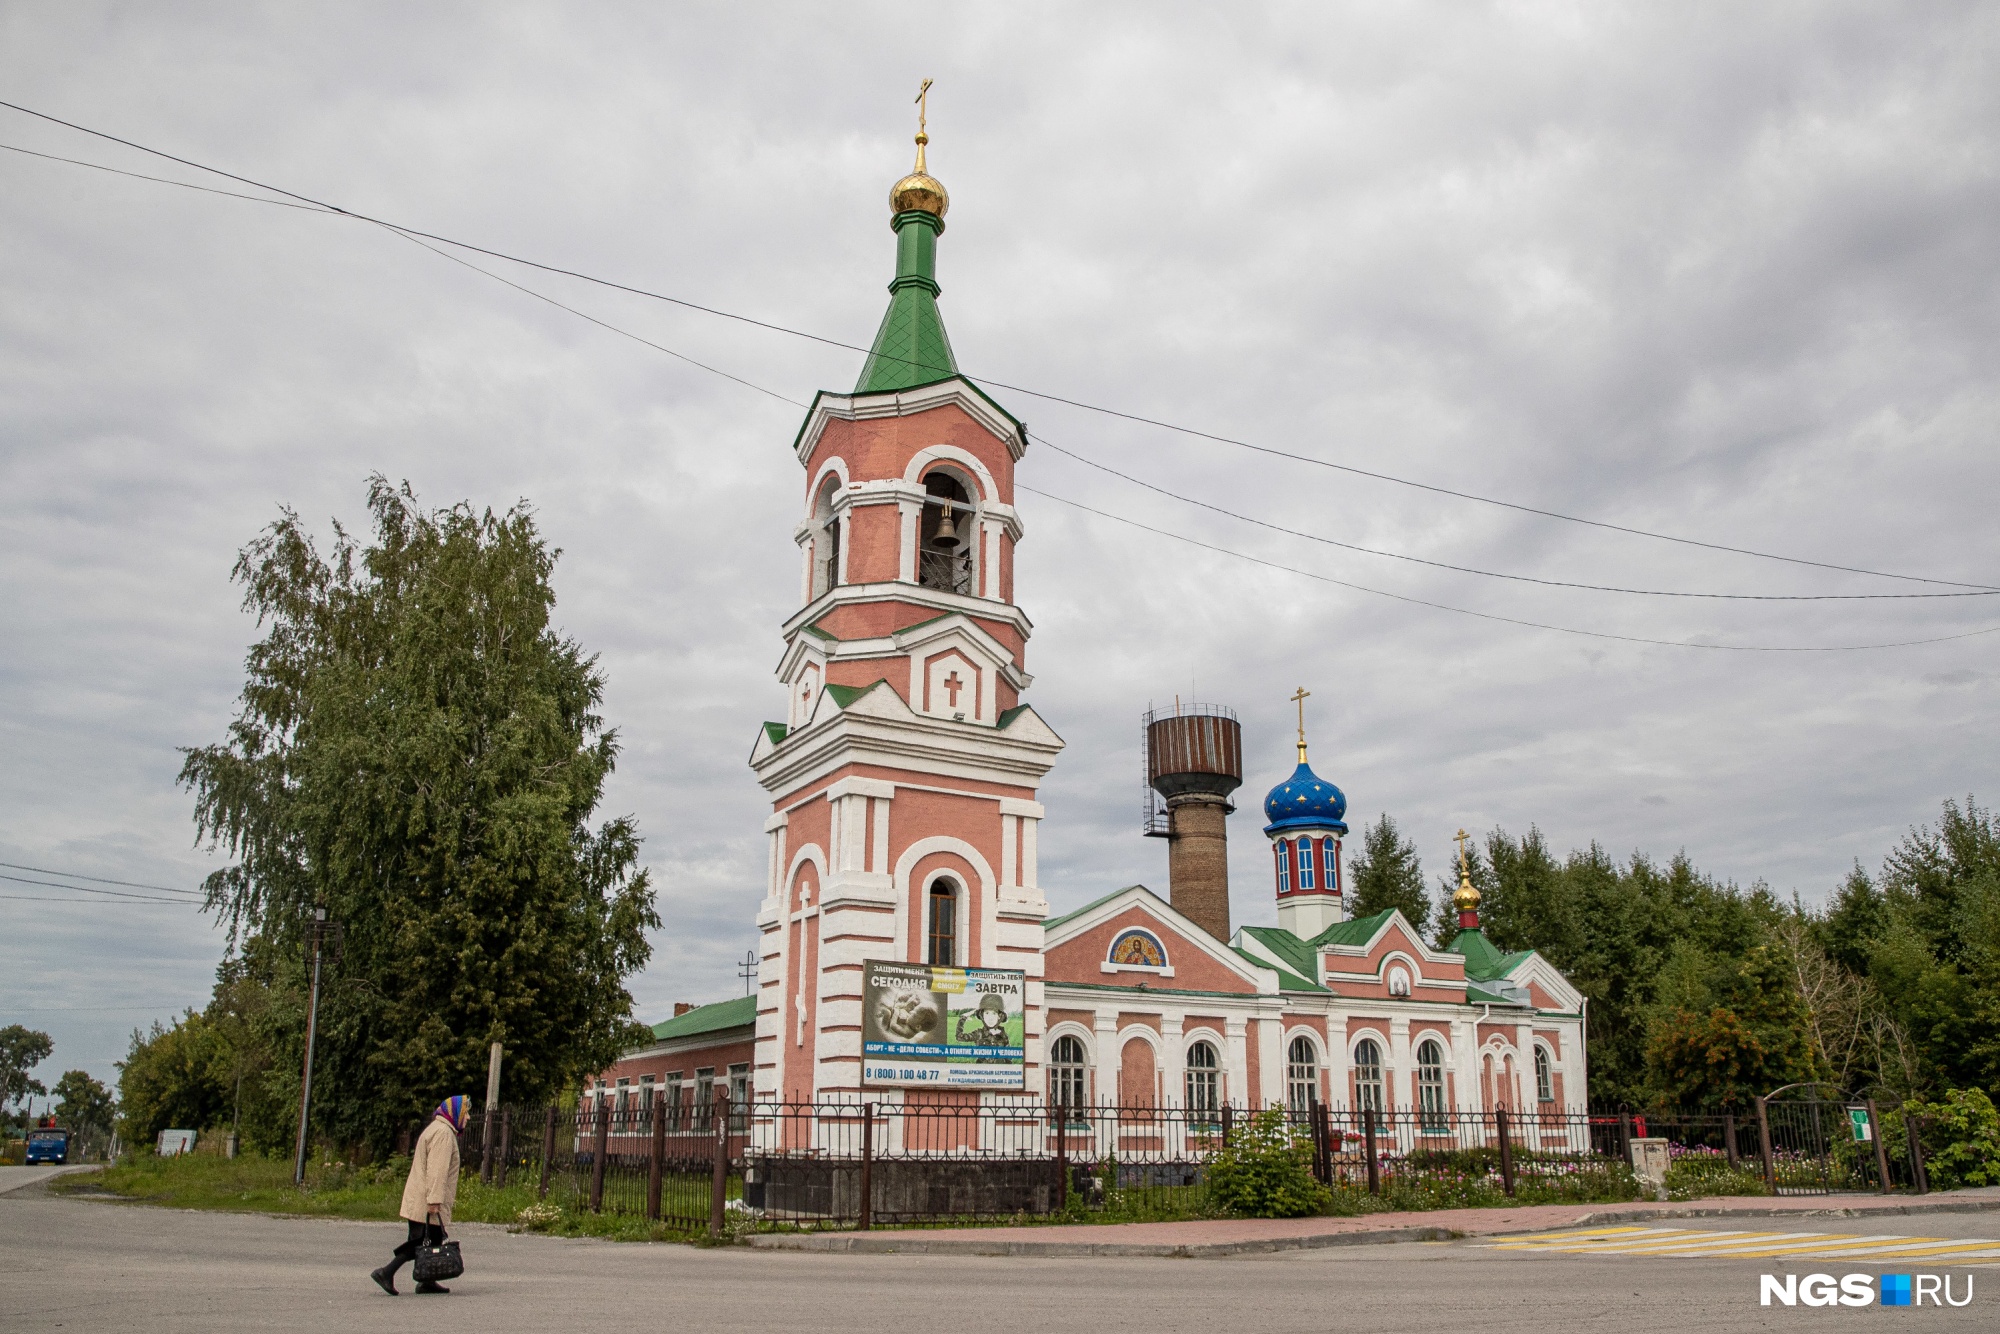 Церковь Алексия, митрополита Московского, увешана рекламой